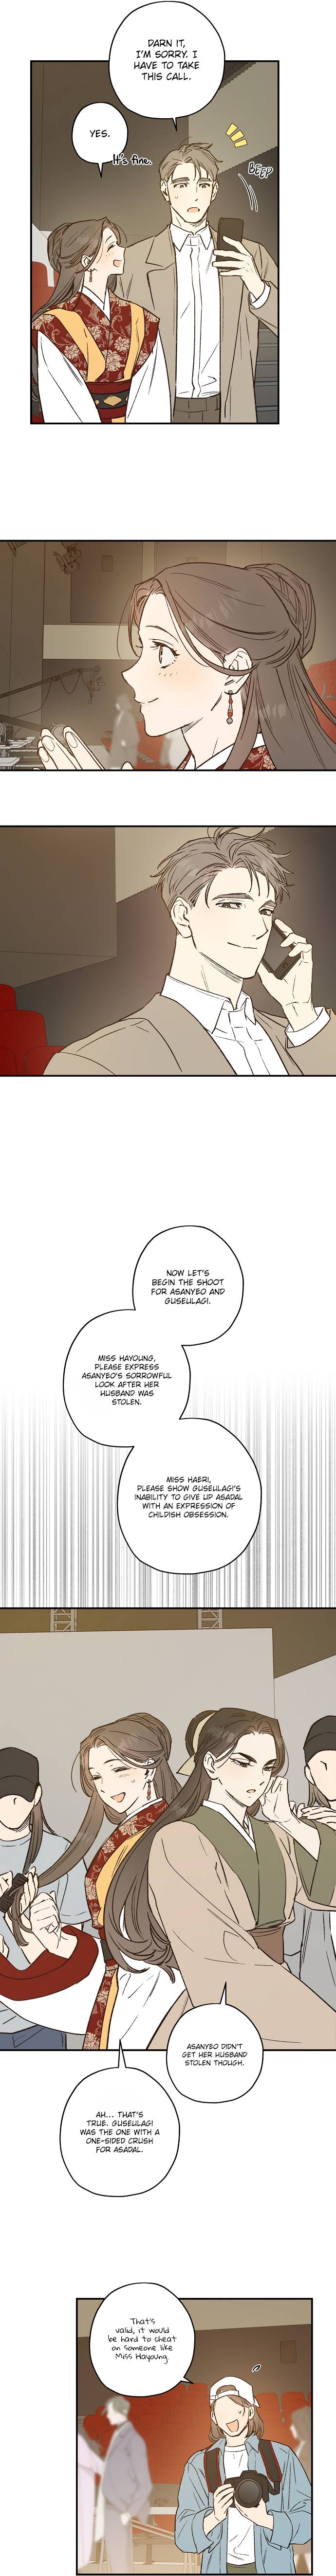 Onsaemiro - Chapter 25 Page 4